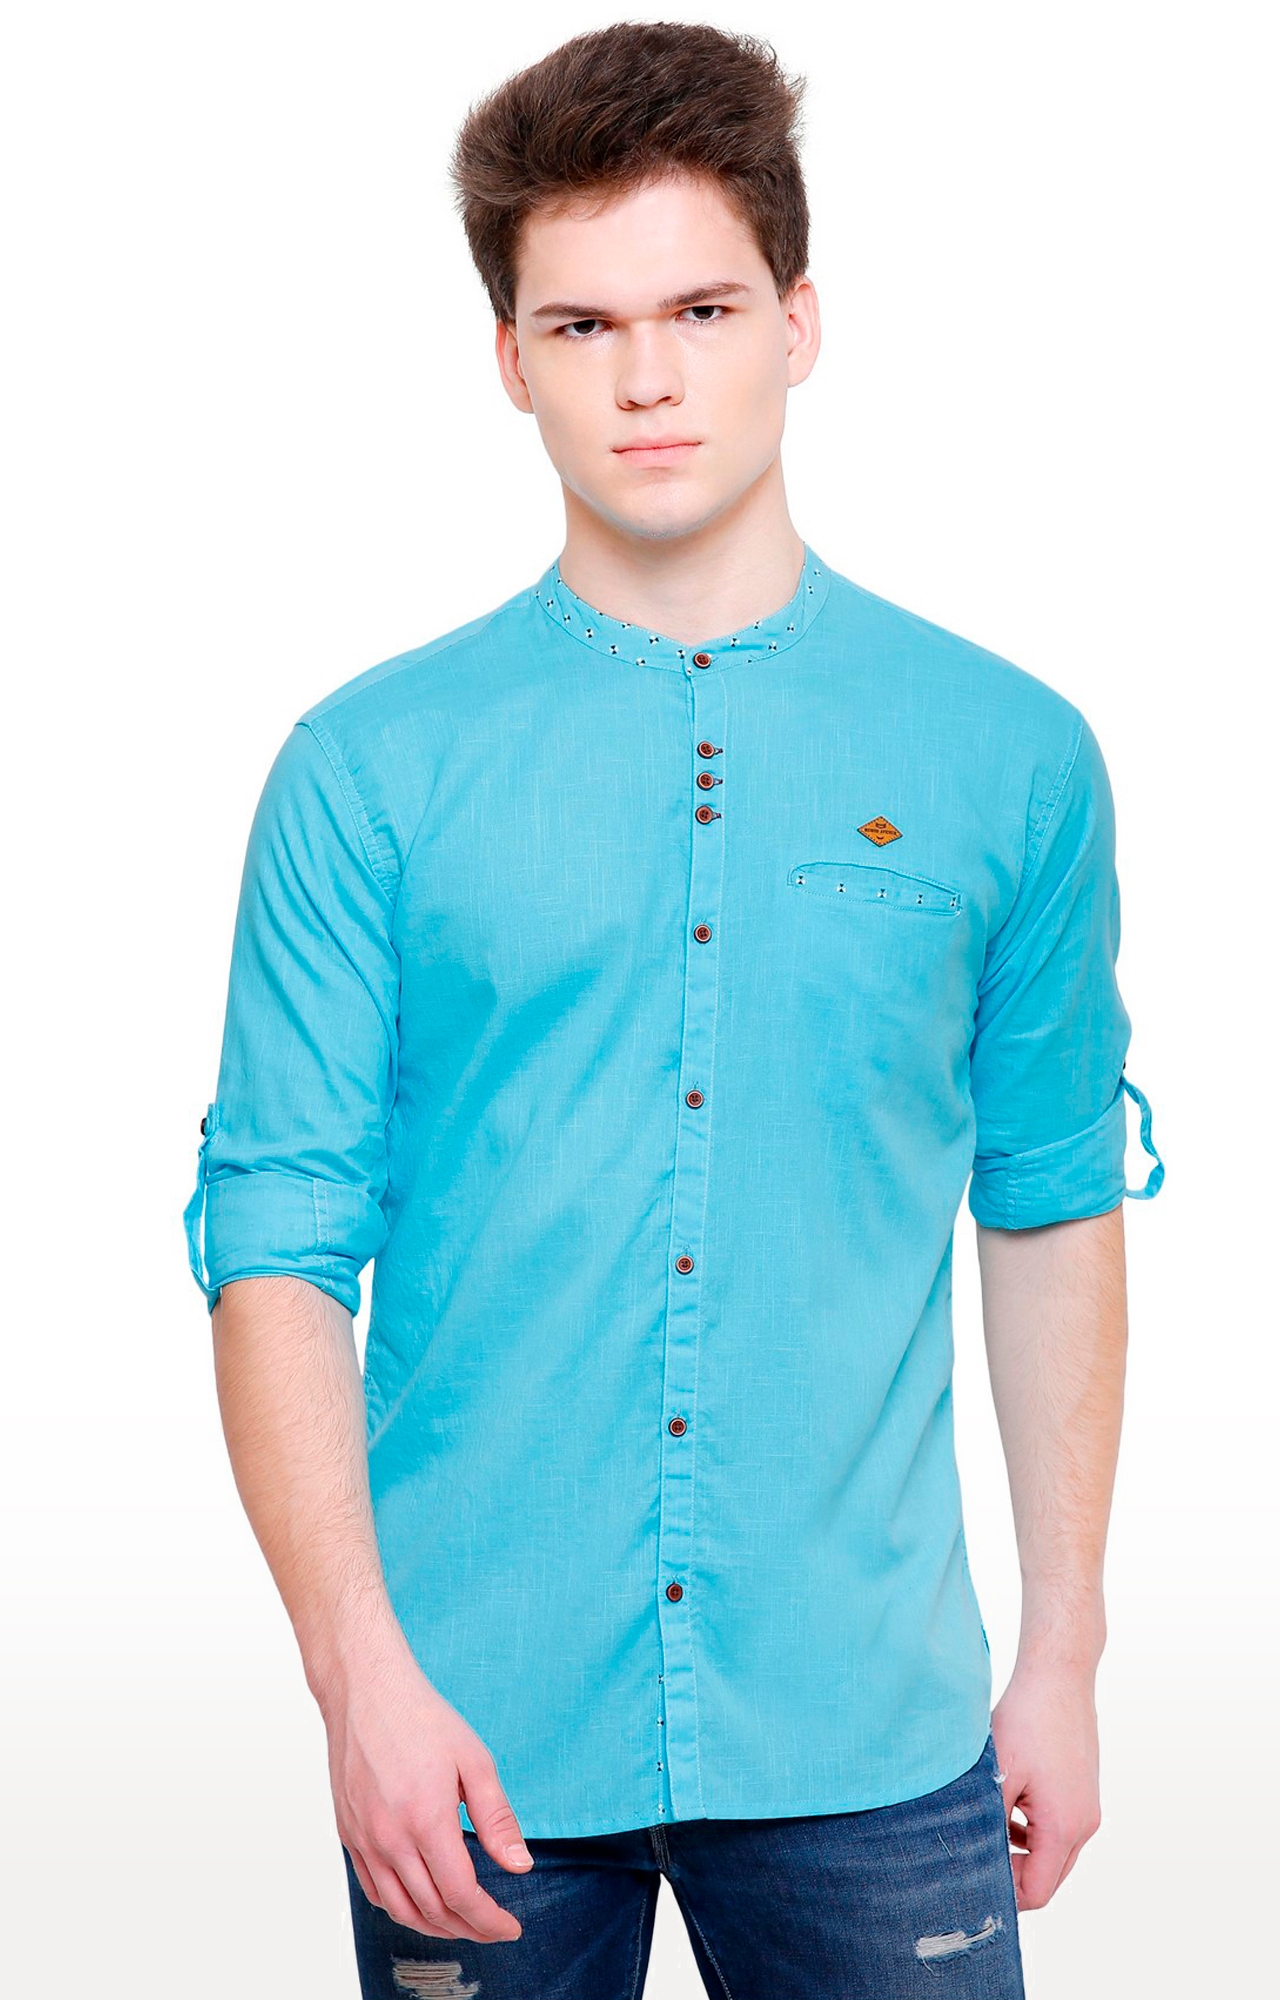 Kuons Avenue Men's Turquoise Linen Cotton Shirt